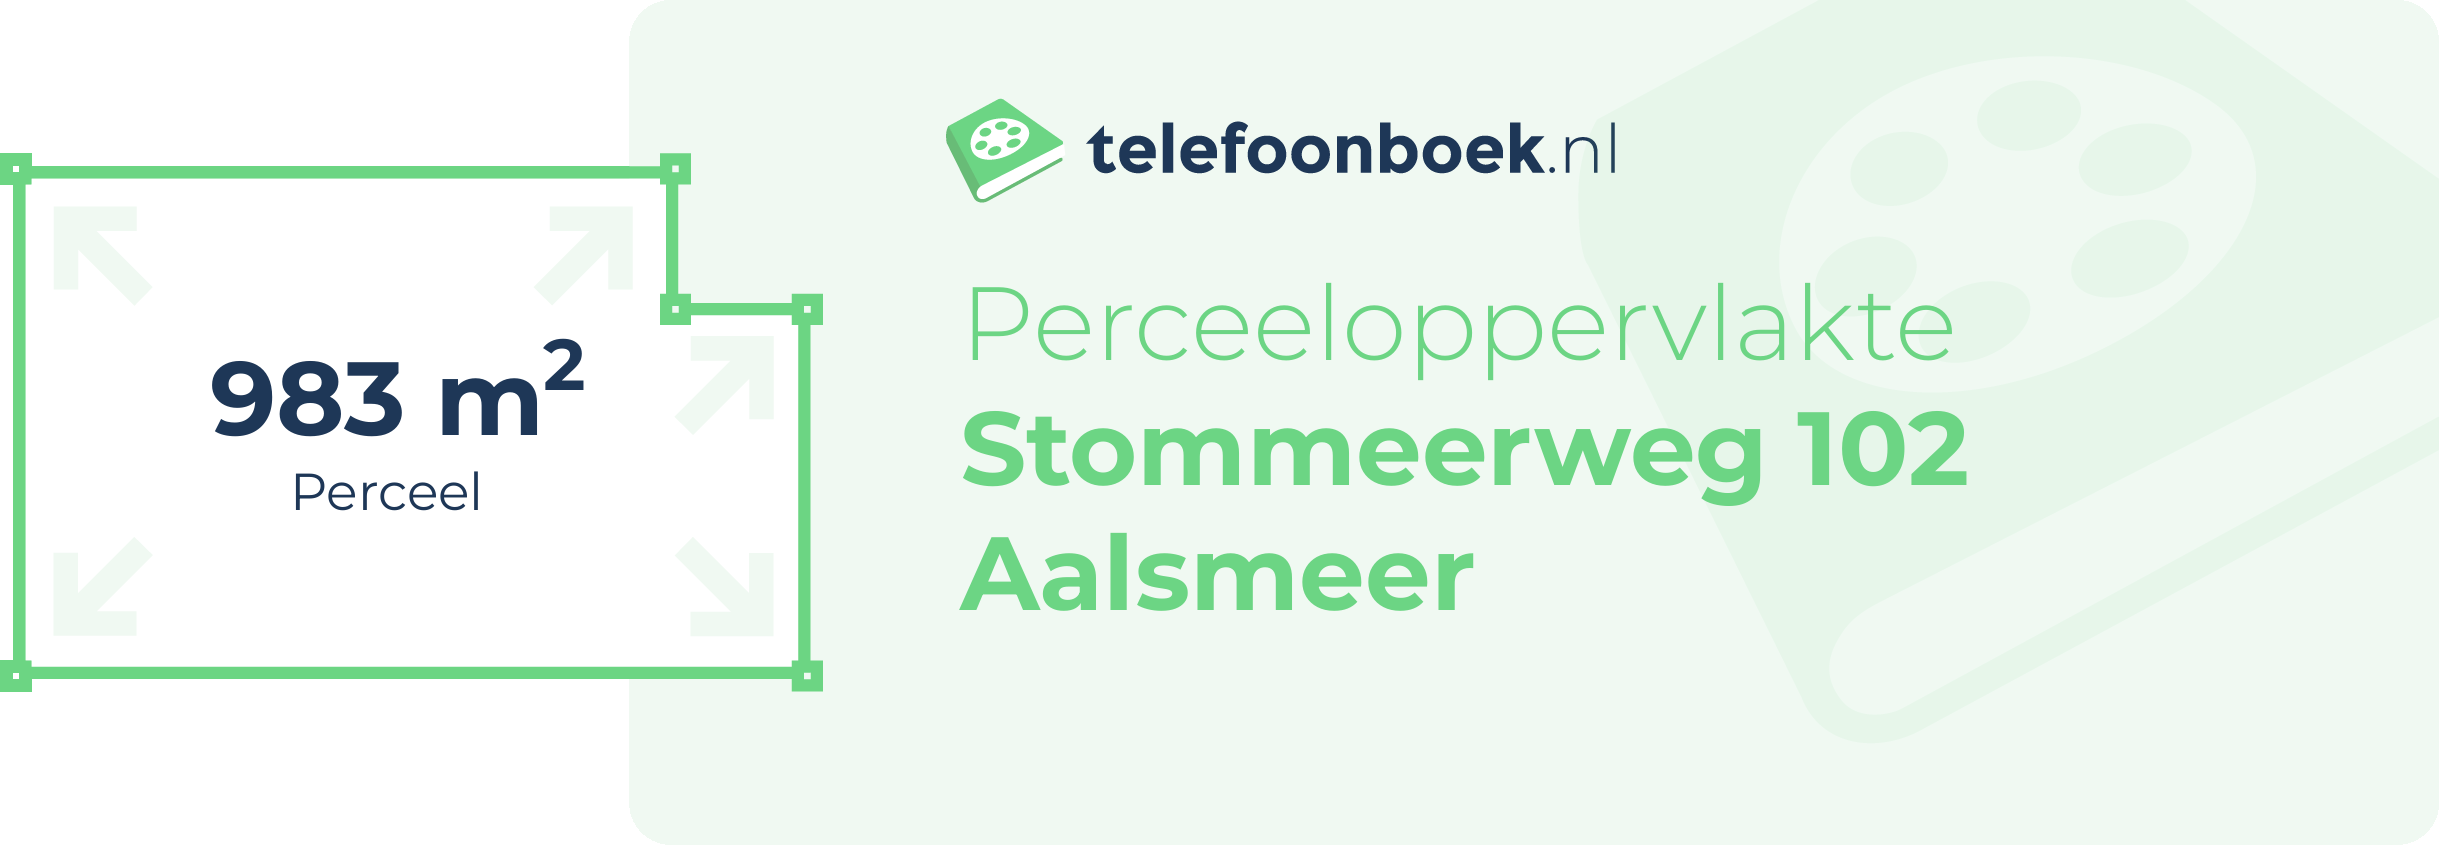 Perceeloppervlakte Stommeerweg 102 Aalsmeer